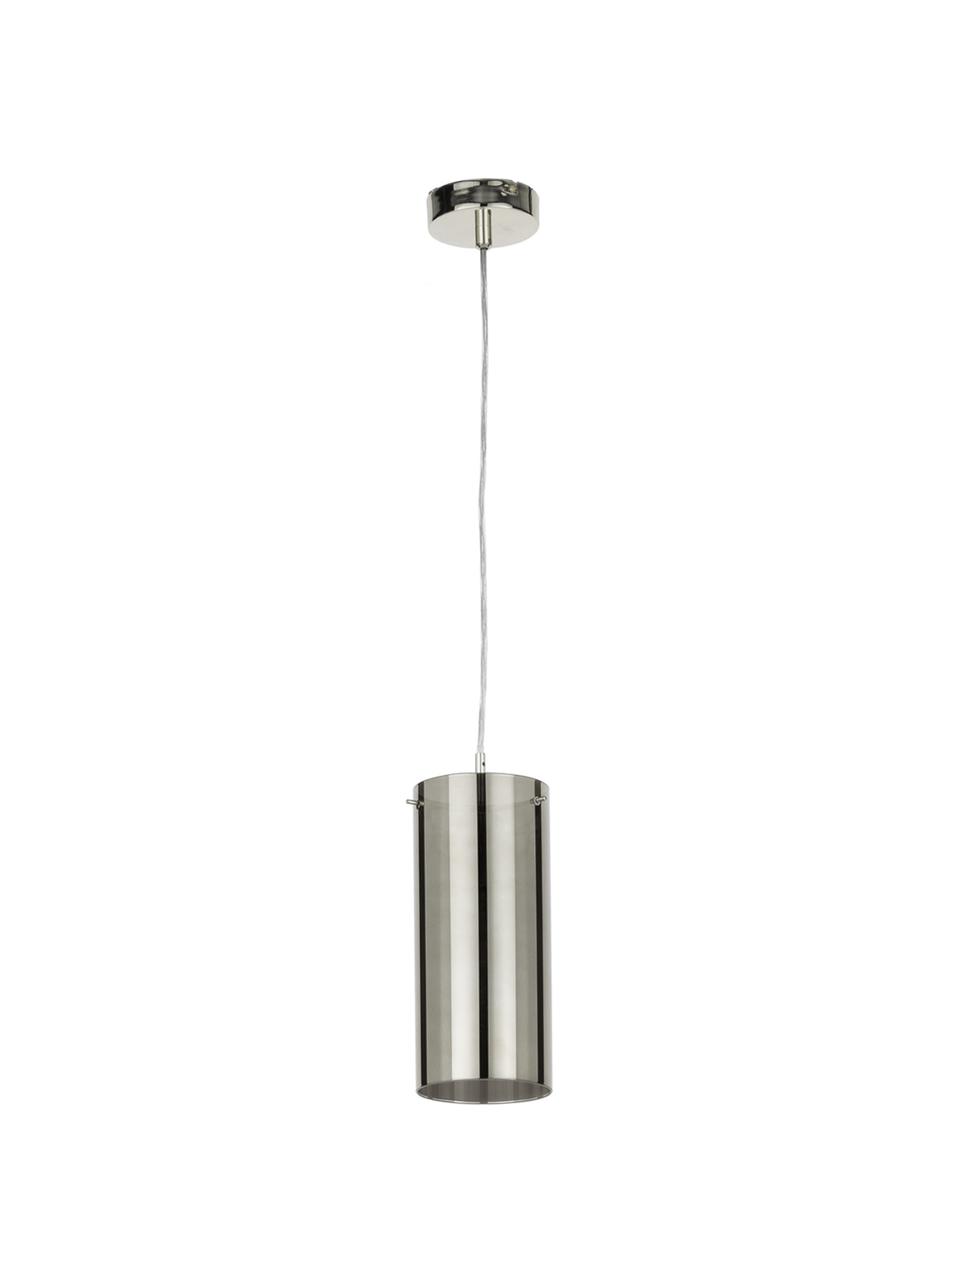 Hanglamp Storm van glas, Lampenkap: gecoat glas, Lampenkap: zilvergrijs, transparant. Bevestiging en baldakijn: nikkelkleurig, Ø 12 cm